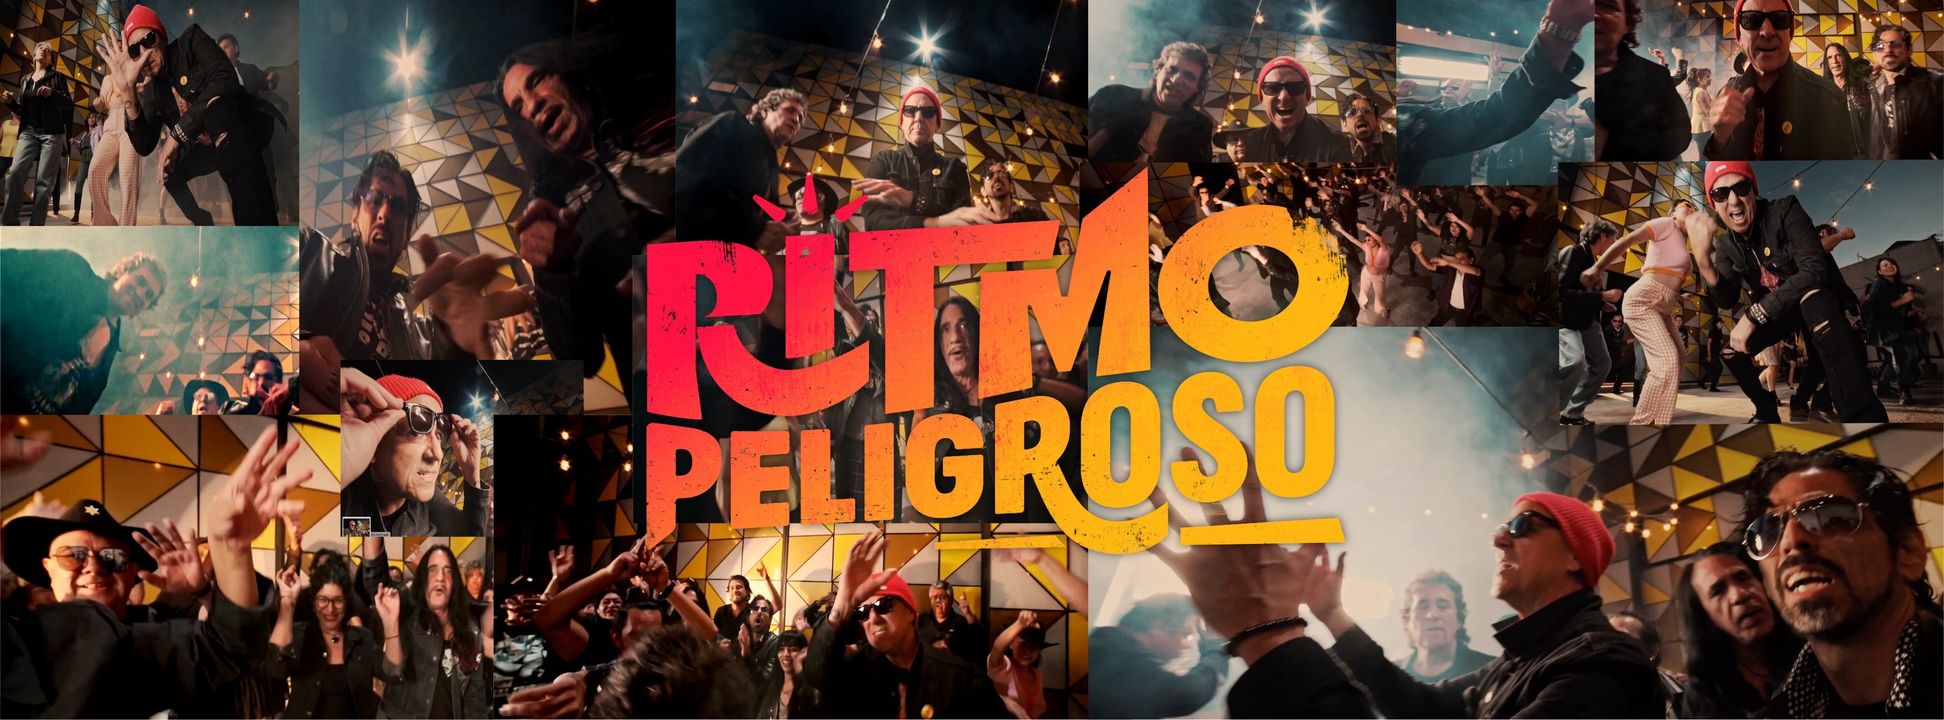 Ritmo Peligroso se formó en el año 1978 bajo el nombre de Dangerous Rhythm y se convirtió en la primera banda de punk mexicana.
(Facebook)